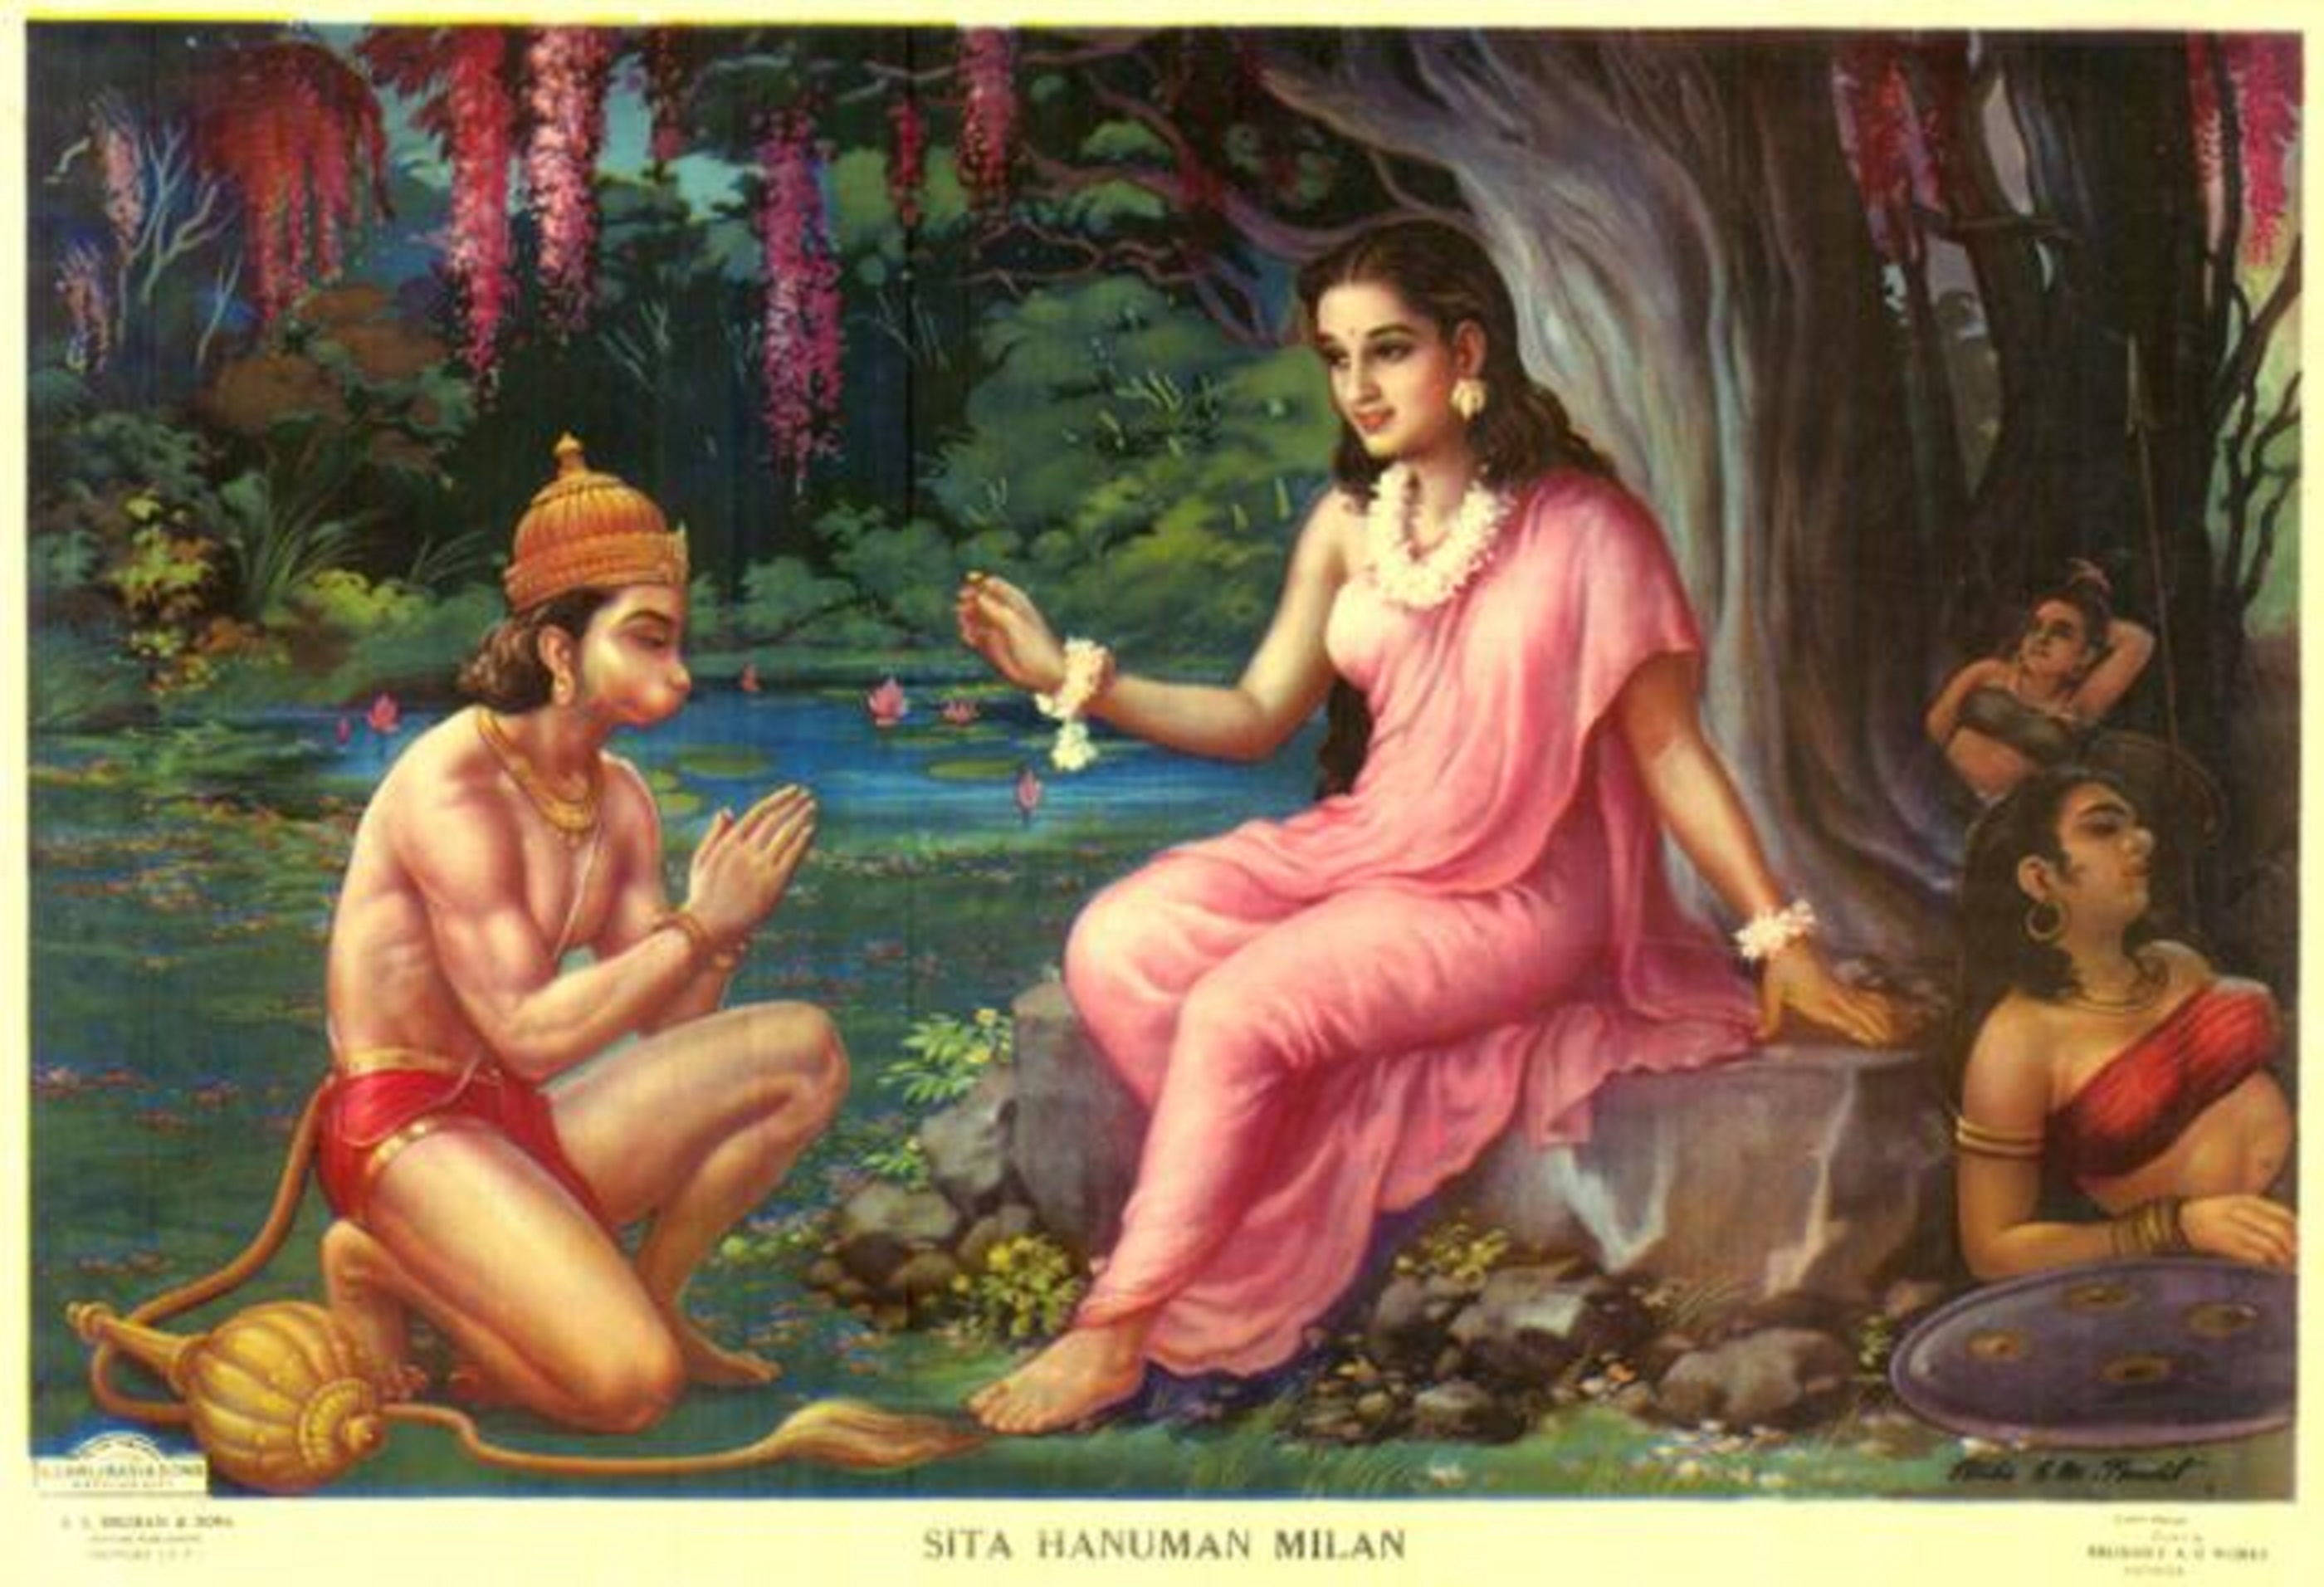 Mother Sita had given to Shri Hanuman in Ashoka Bhatika, Varadhan of A |  माता सीता ने श्री हनुमान को अशोक वाटिका में दिया था अजर-अमर का वरदान, पूजा  से संकटो का